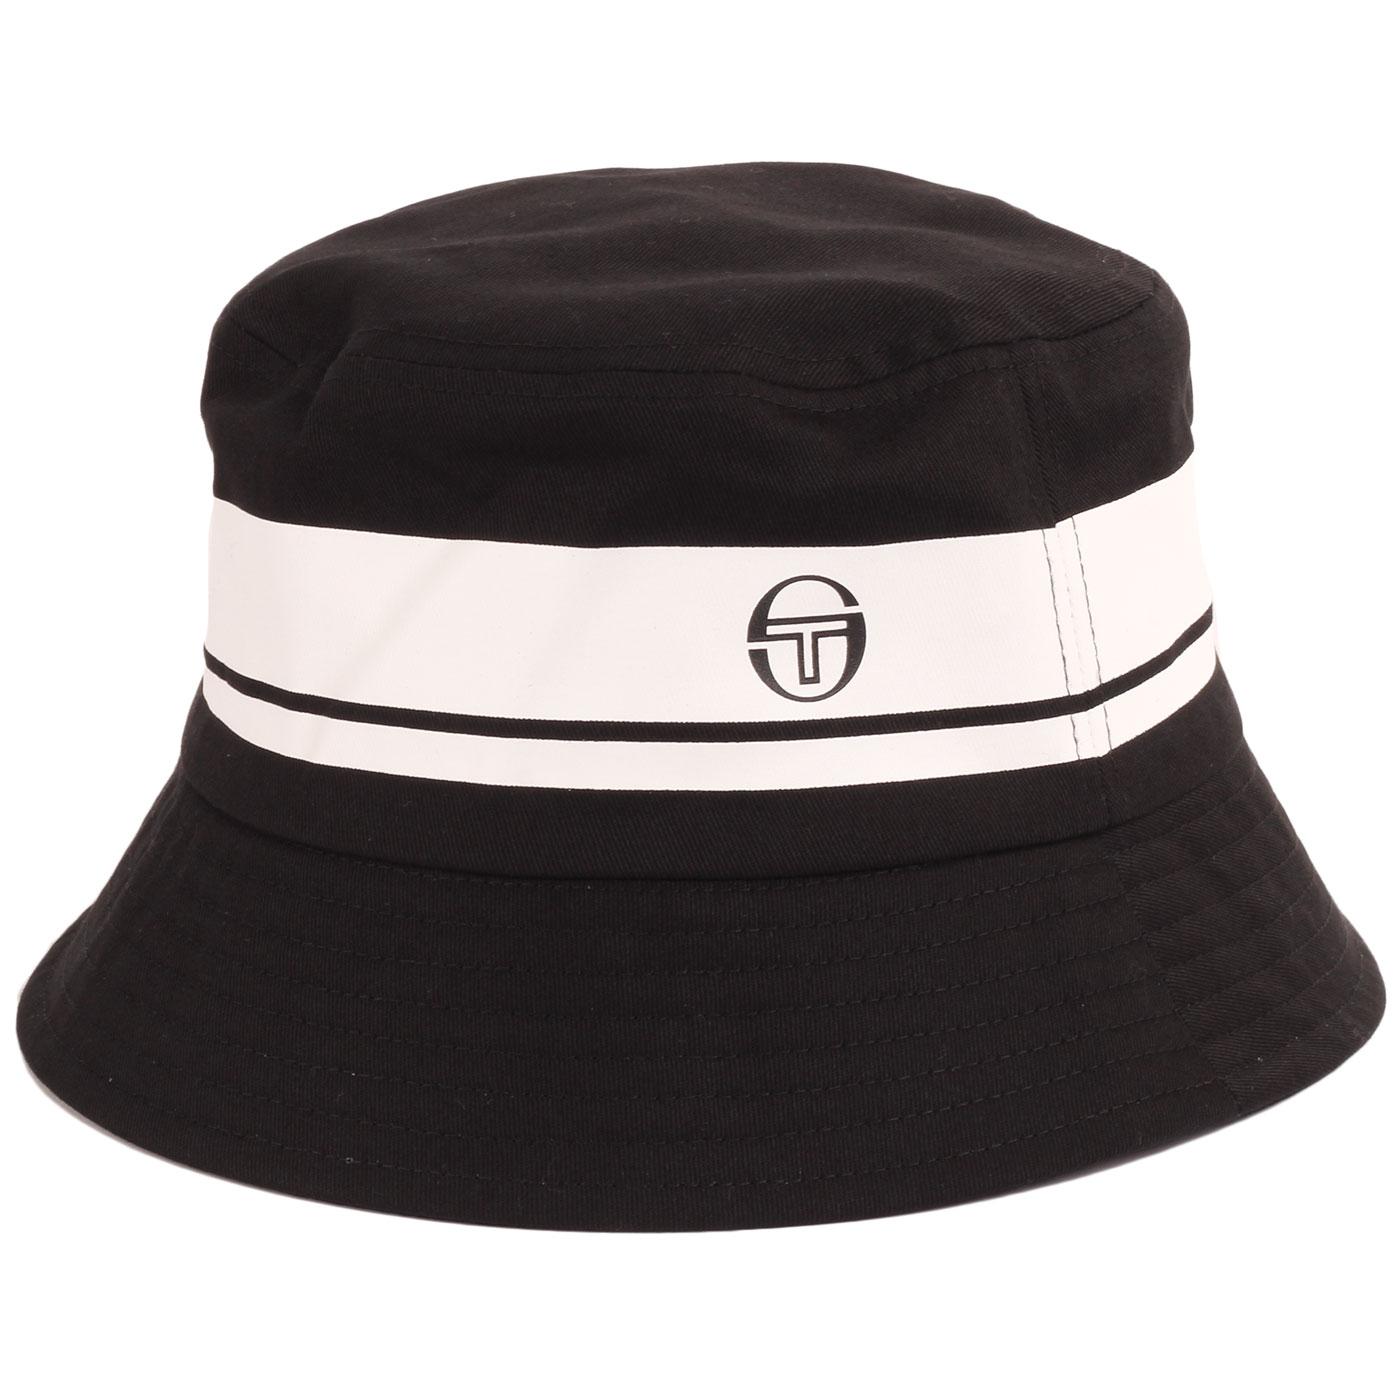 Greater SERGIO TACCHINI Retro 90s Bucket Hat BLACK